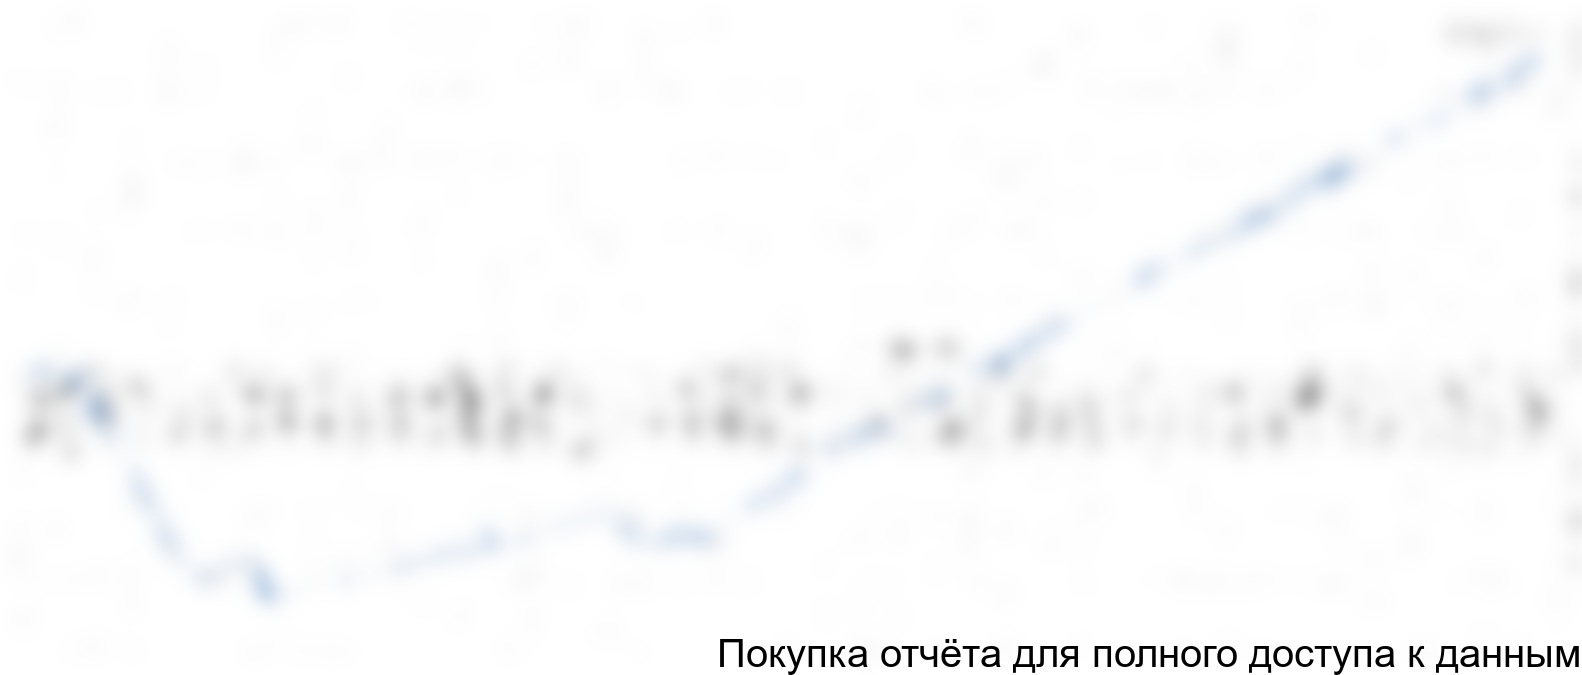 Рисунок 6.5 График чистого денежного потока, тыс. руб.